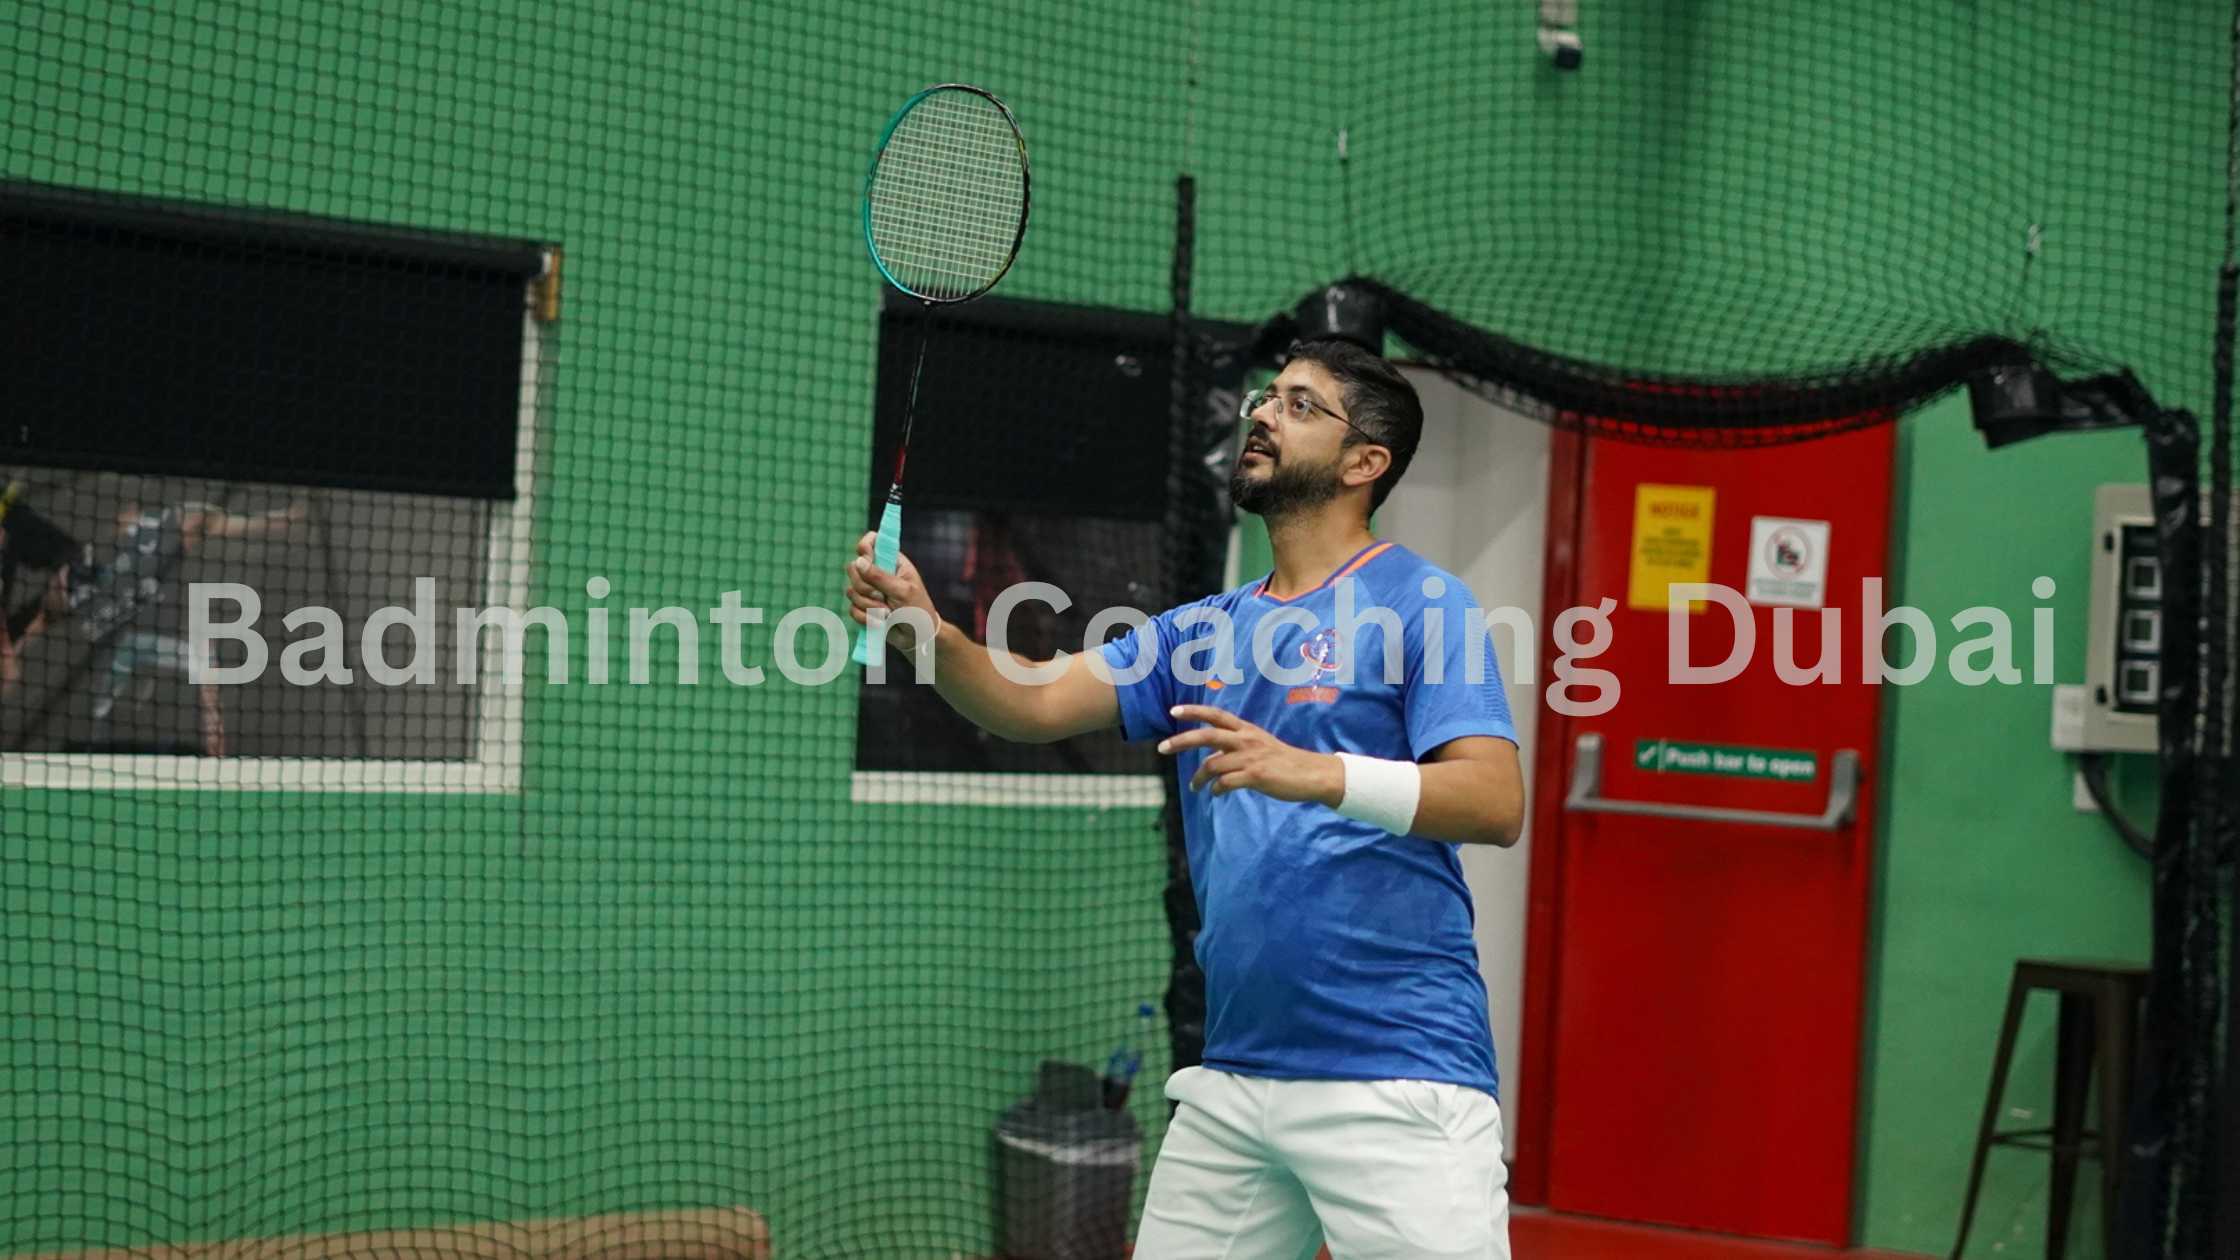 Dubai Badminton Equipment Sales